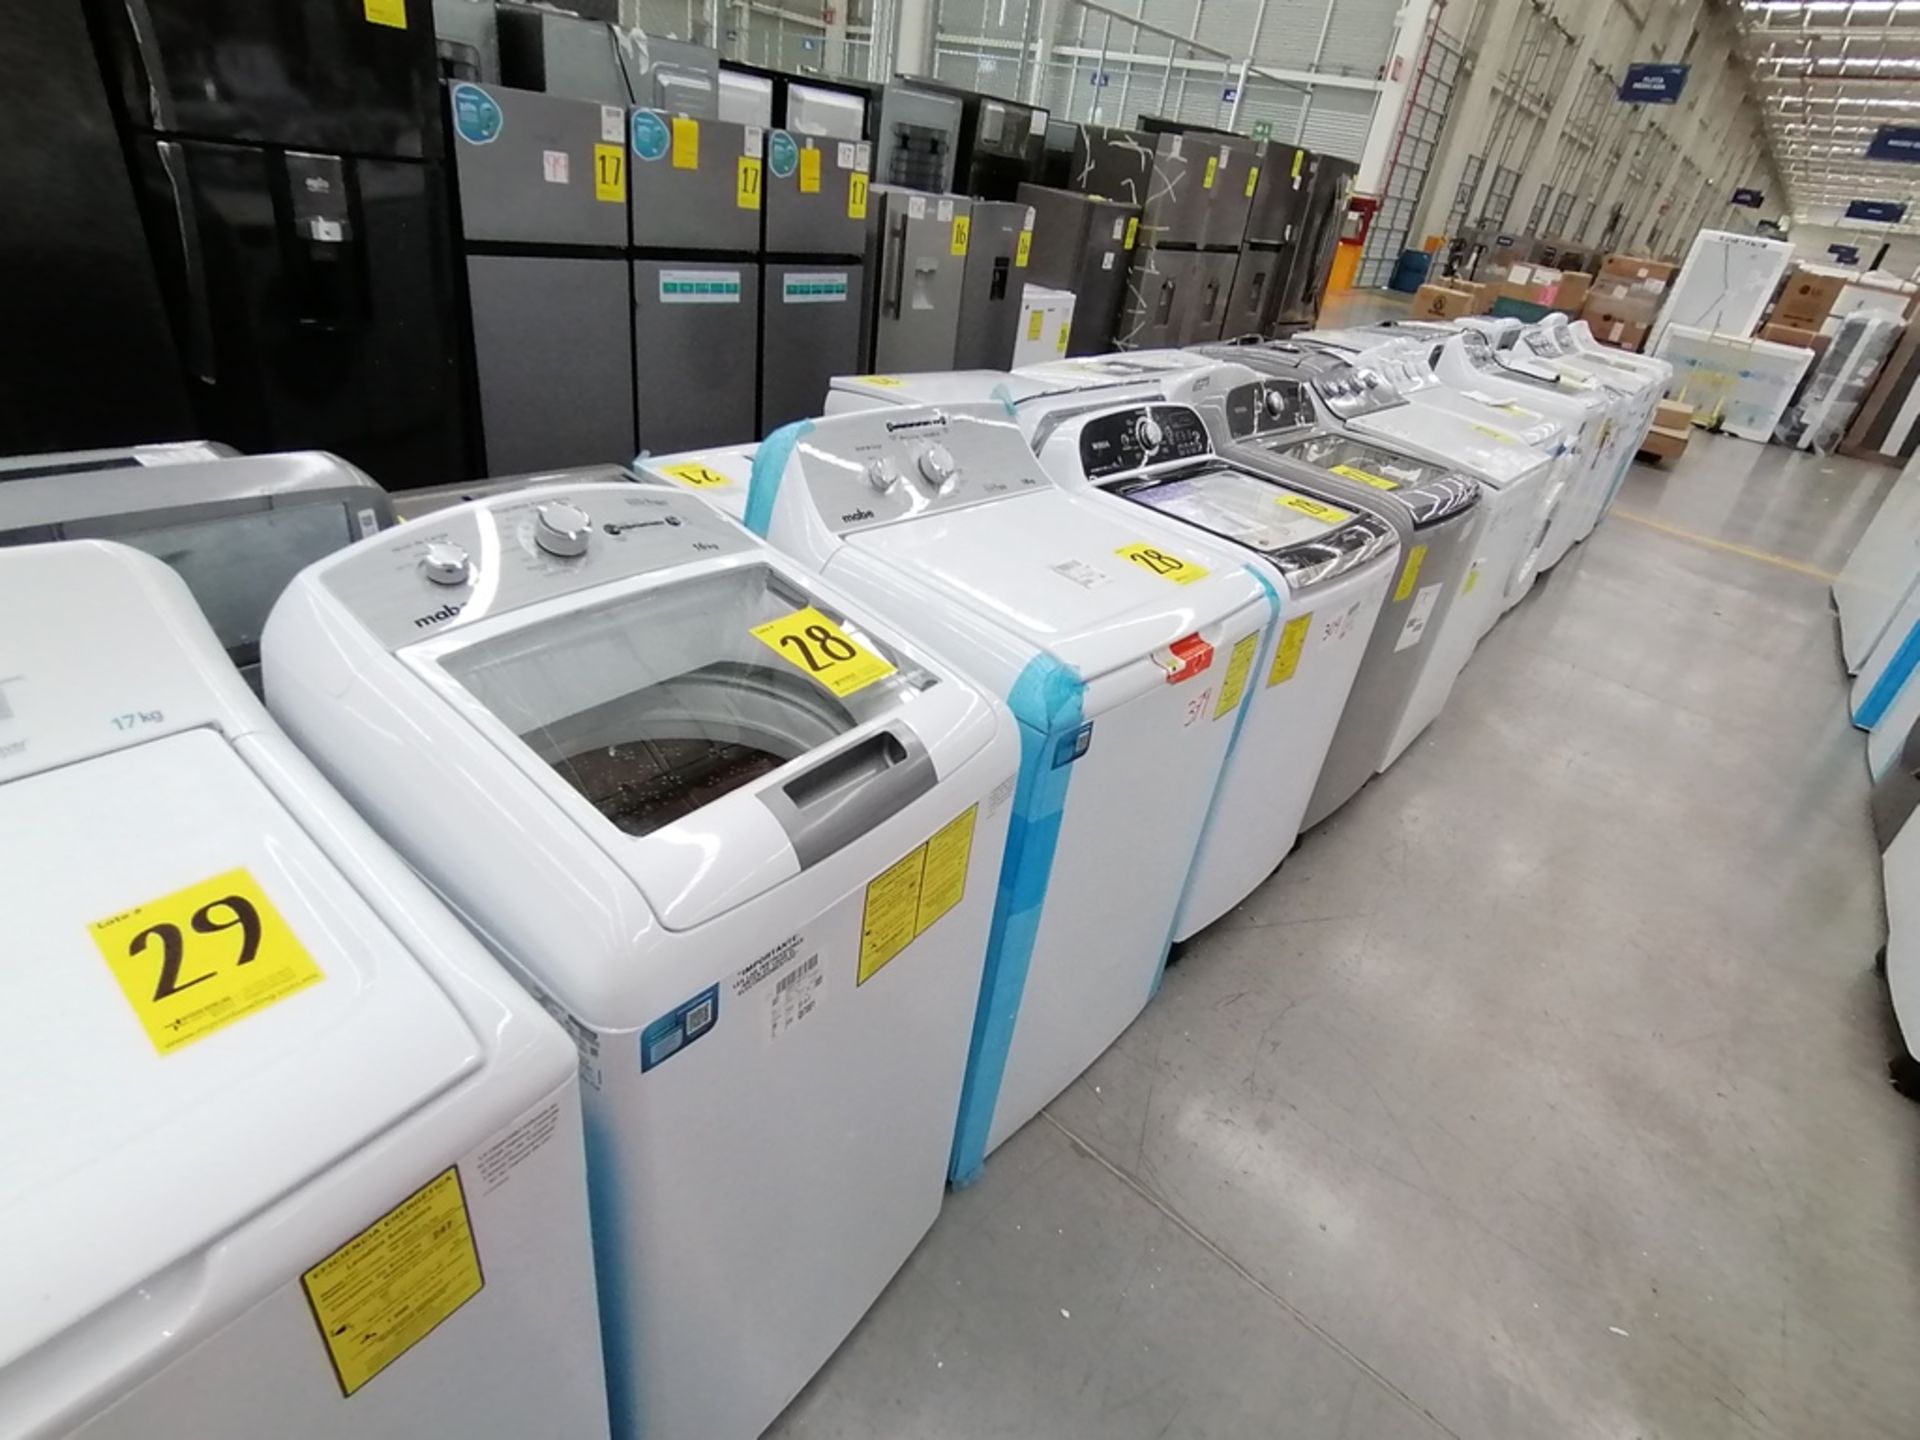 Lote de 3 lavadoras contiene: 1 Lavadora de 16KG, Marca Mabe, Modelo LMA46102VBAB02, Serie 2108S802